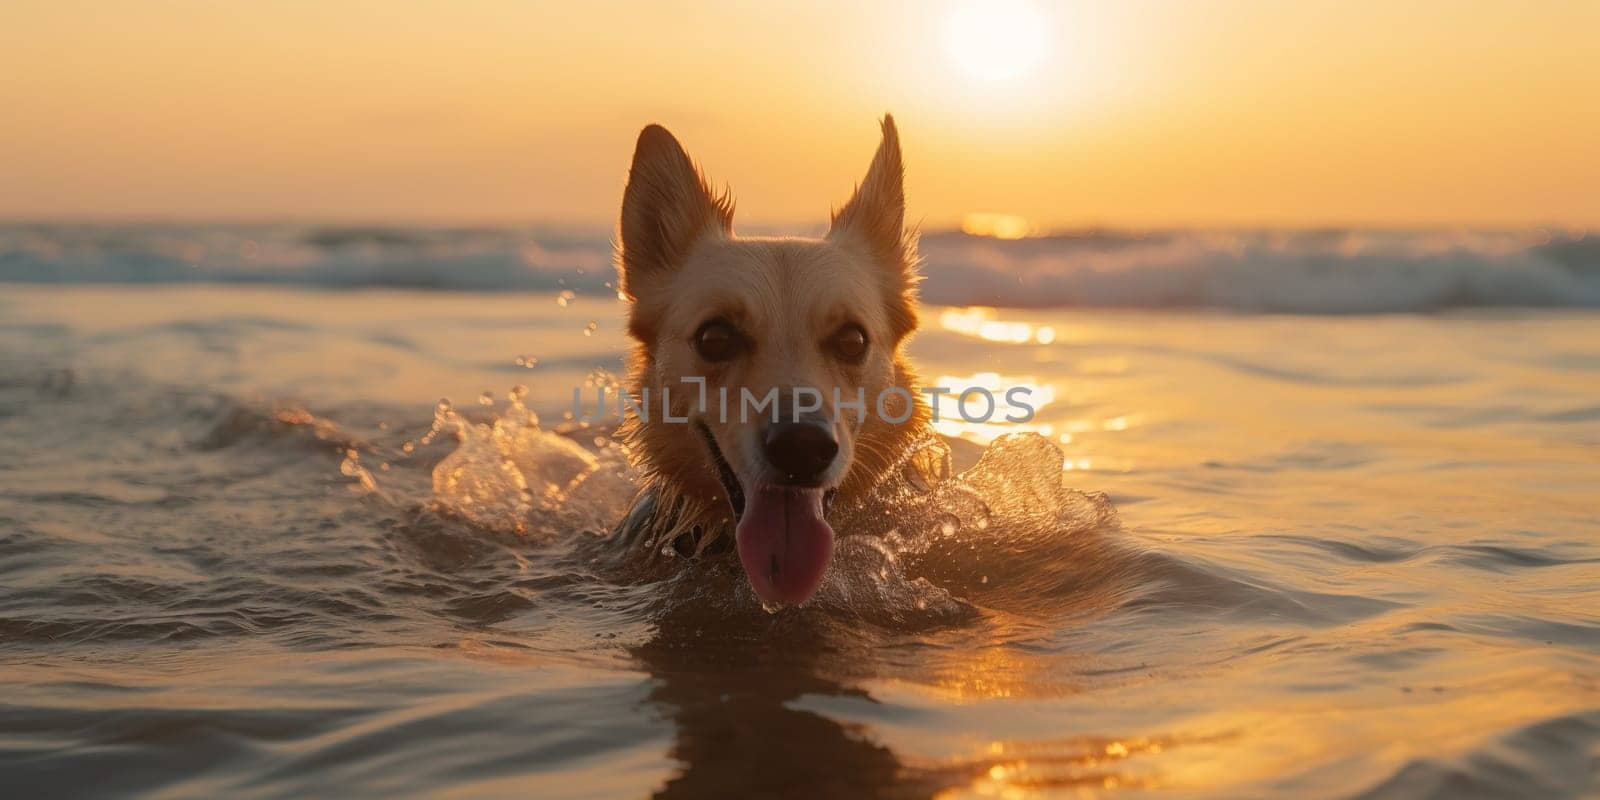 Dog swimming in ocean water enjoys sunset.